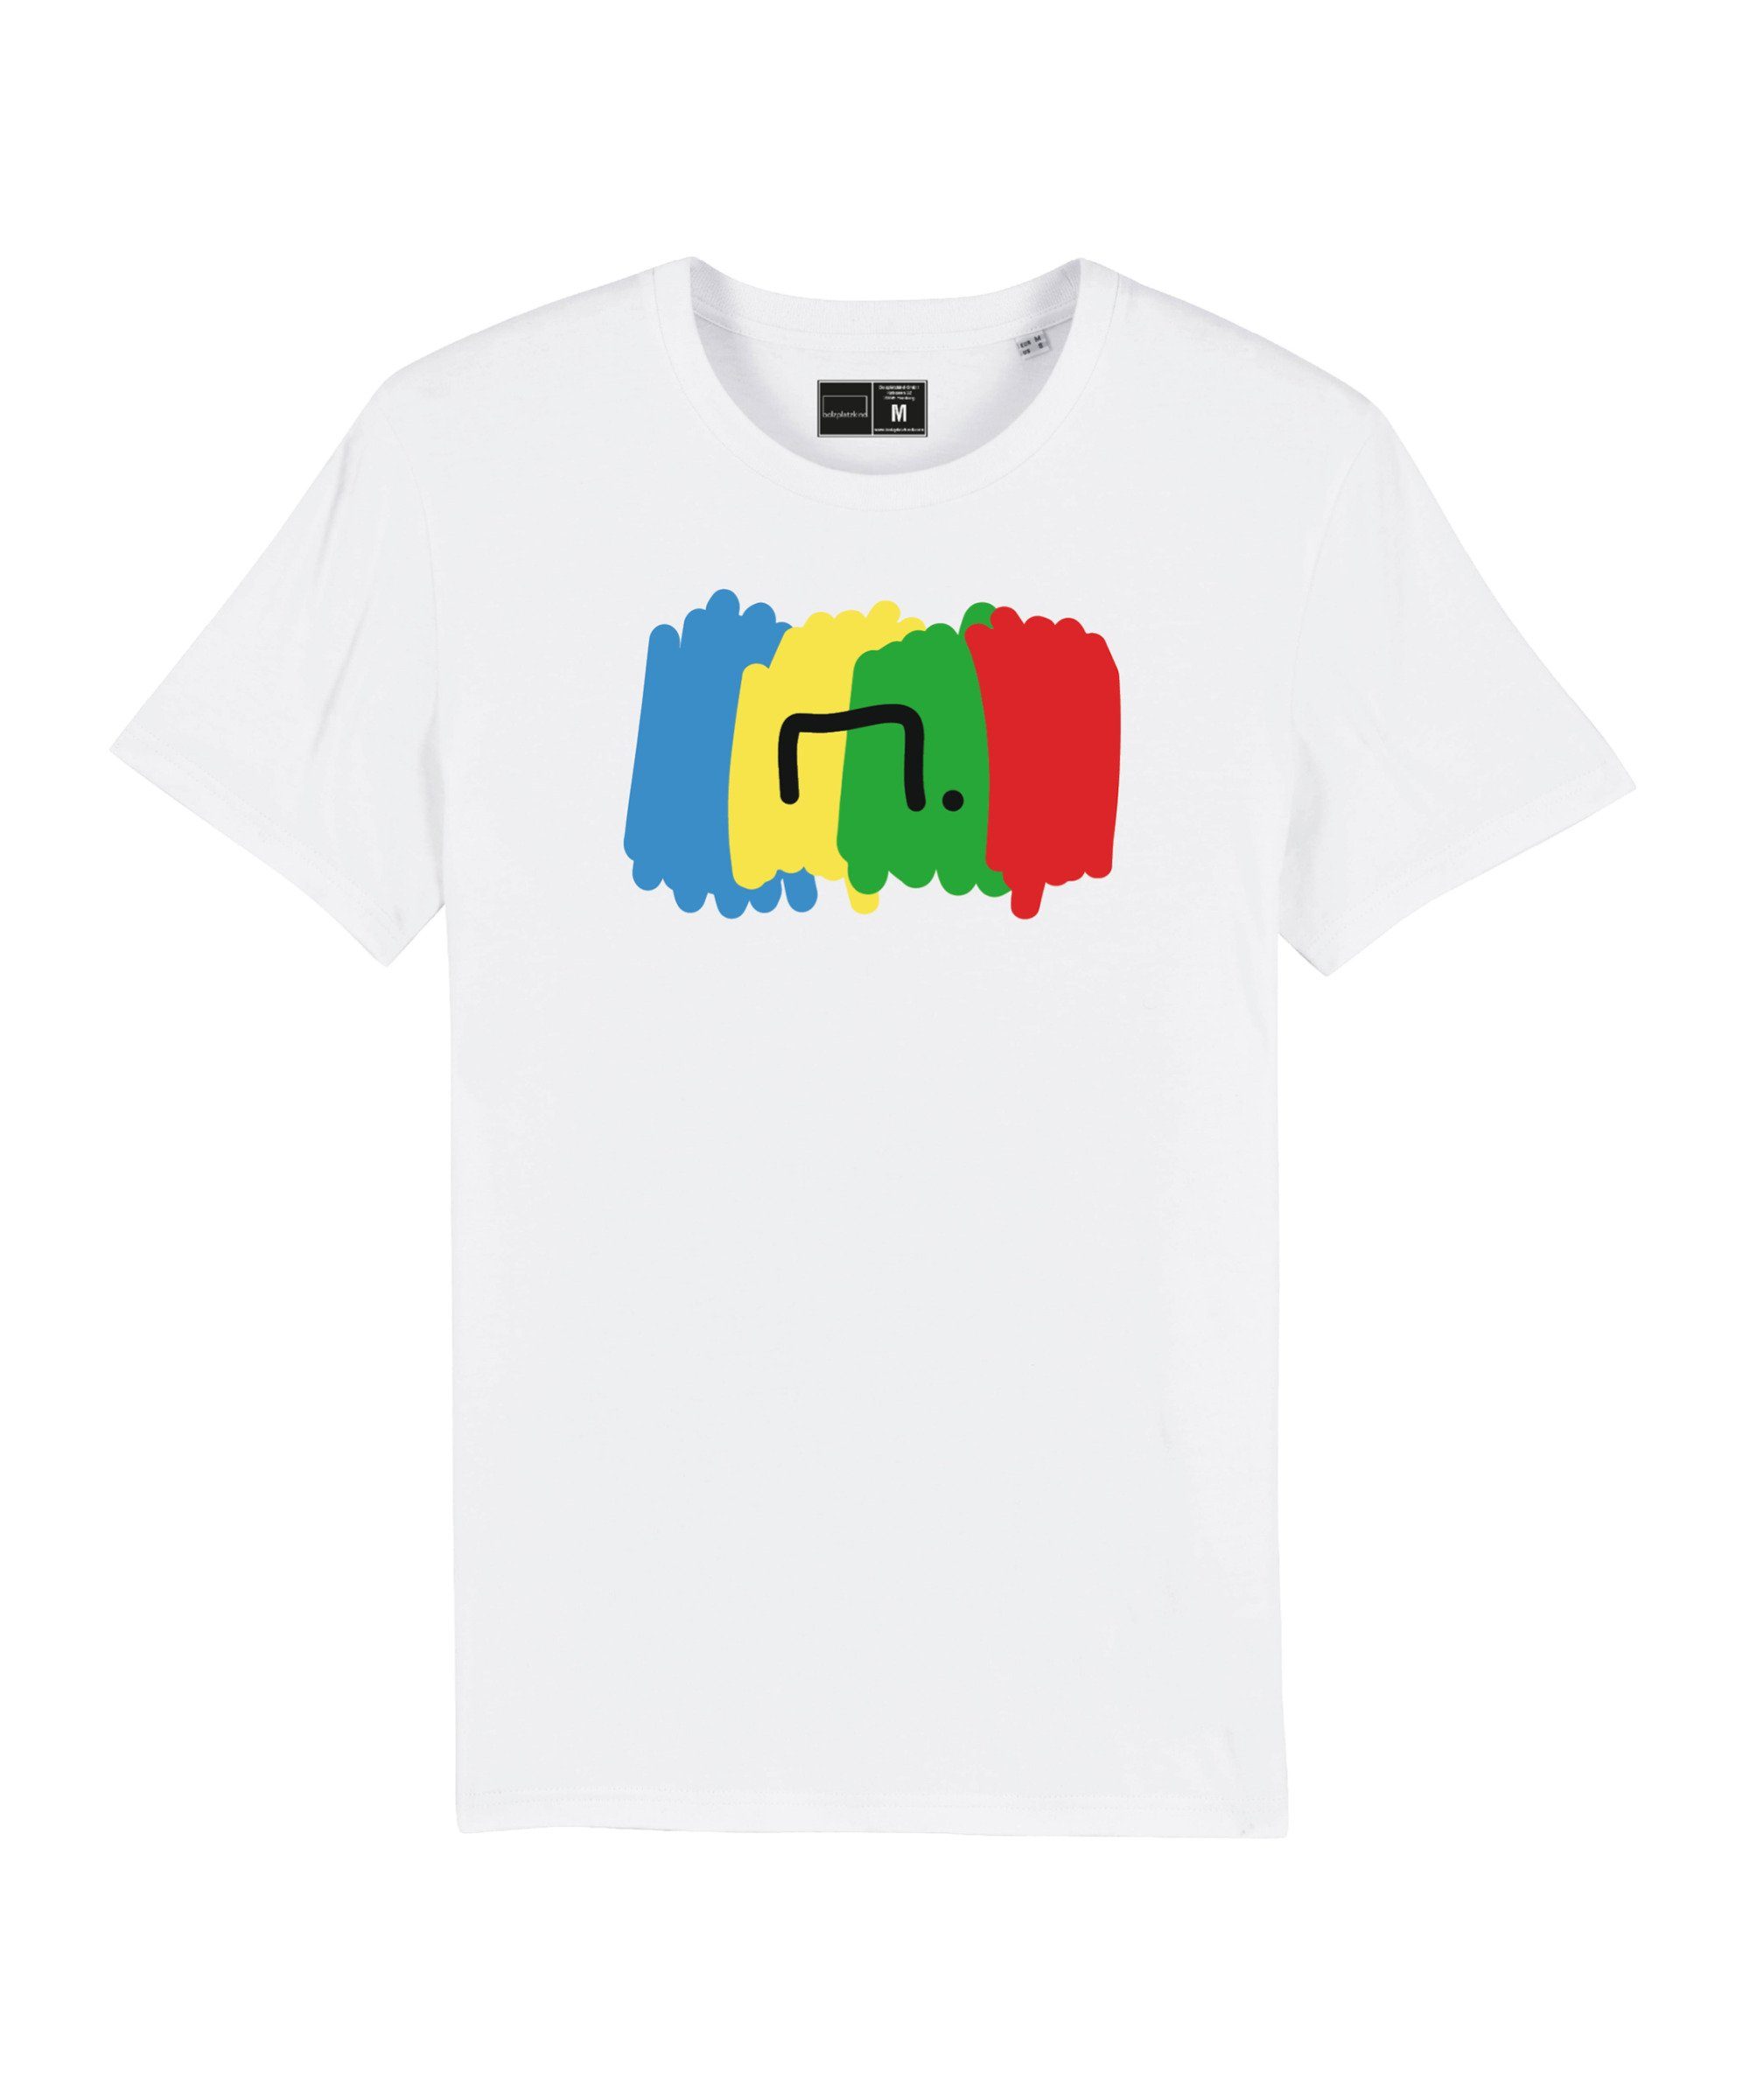 Produkt Bolzplatzkind T-Shirt "Free" weiss Nachhaltiges T-Shirt